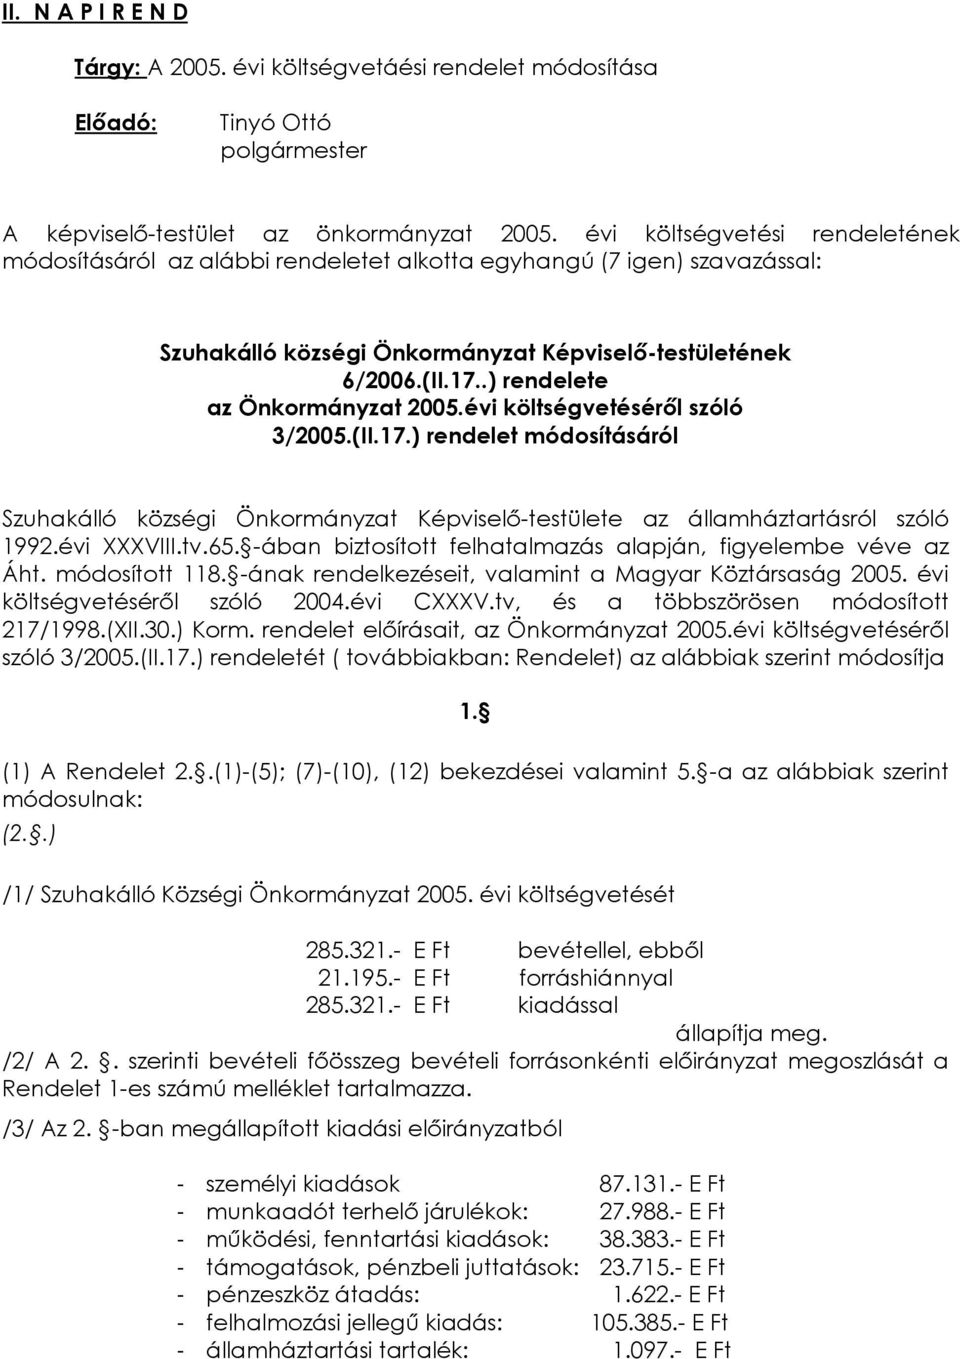 .) rendelete az Önkormányzat 2005.évi költségvetésérõl szóló 3/2005.(II.17.) rendelet módosításáról Szuhakálló községi Önkormányzat Képviselõ-testülete az államháztartásról szóló 1992.évi XXXVIII.tv.